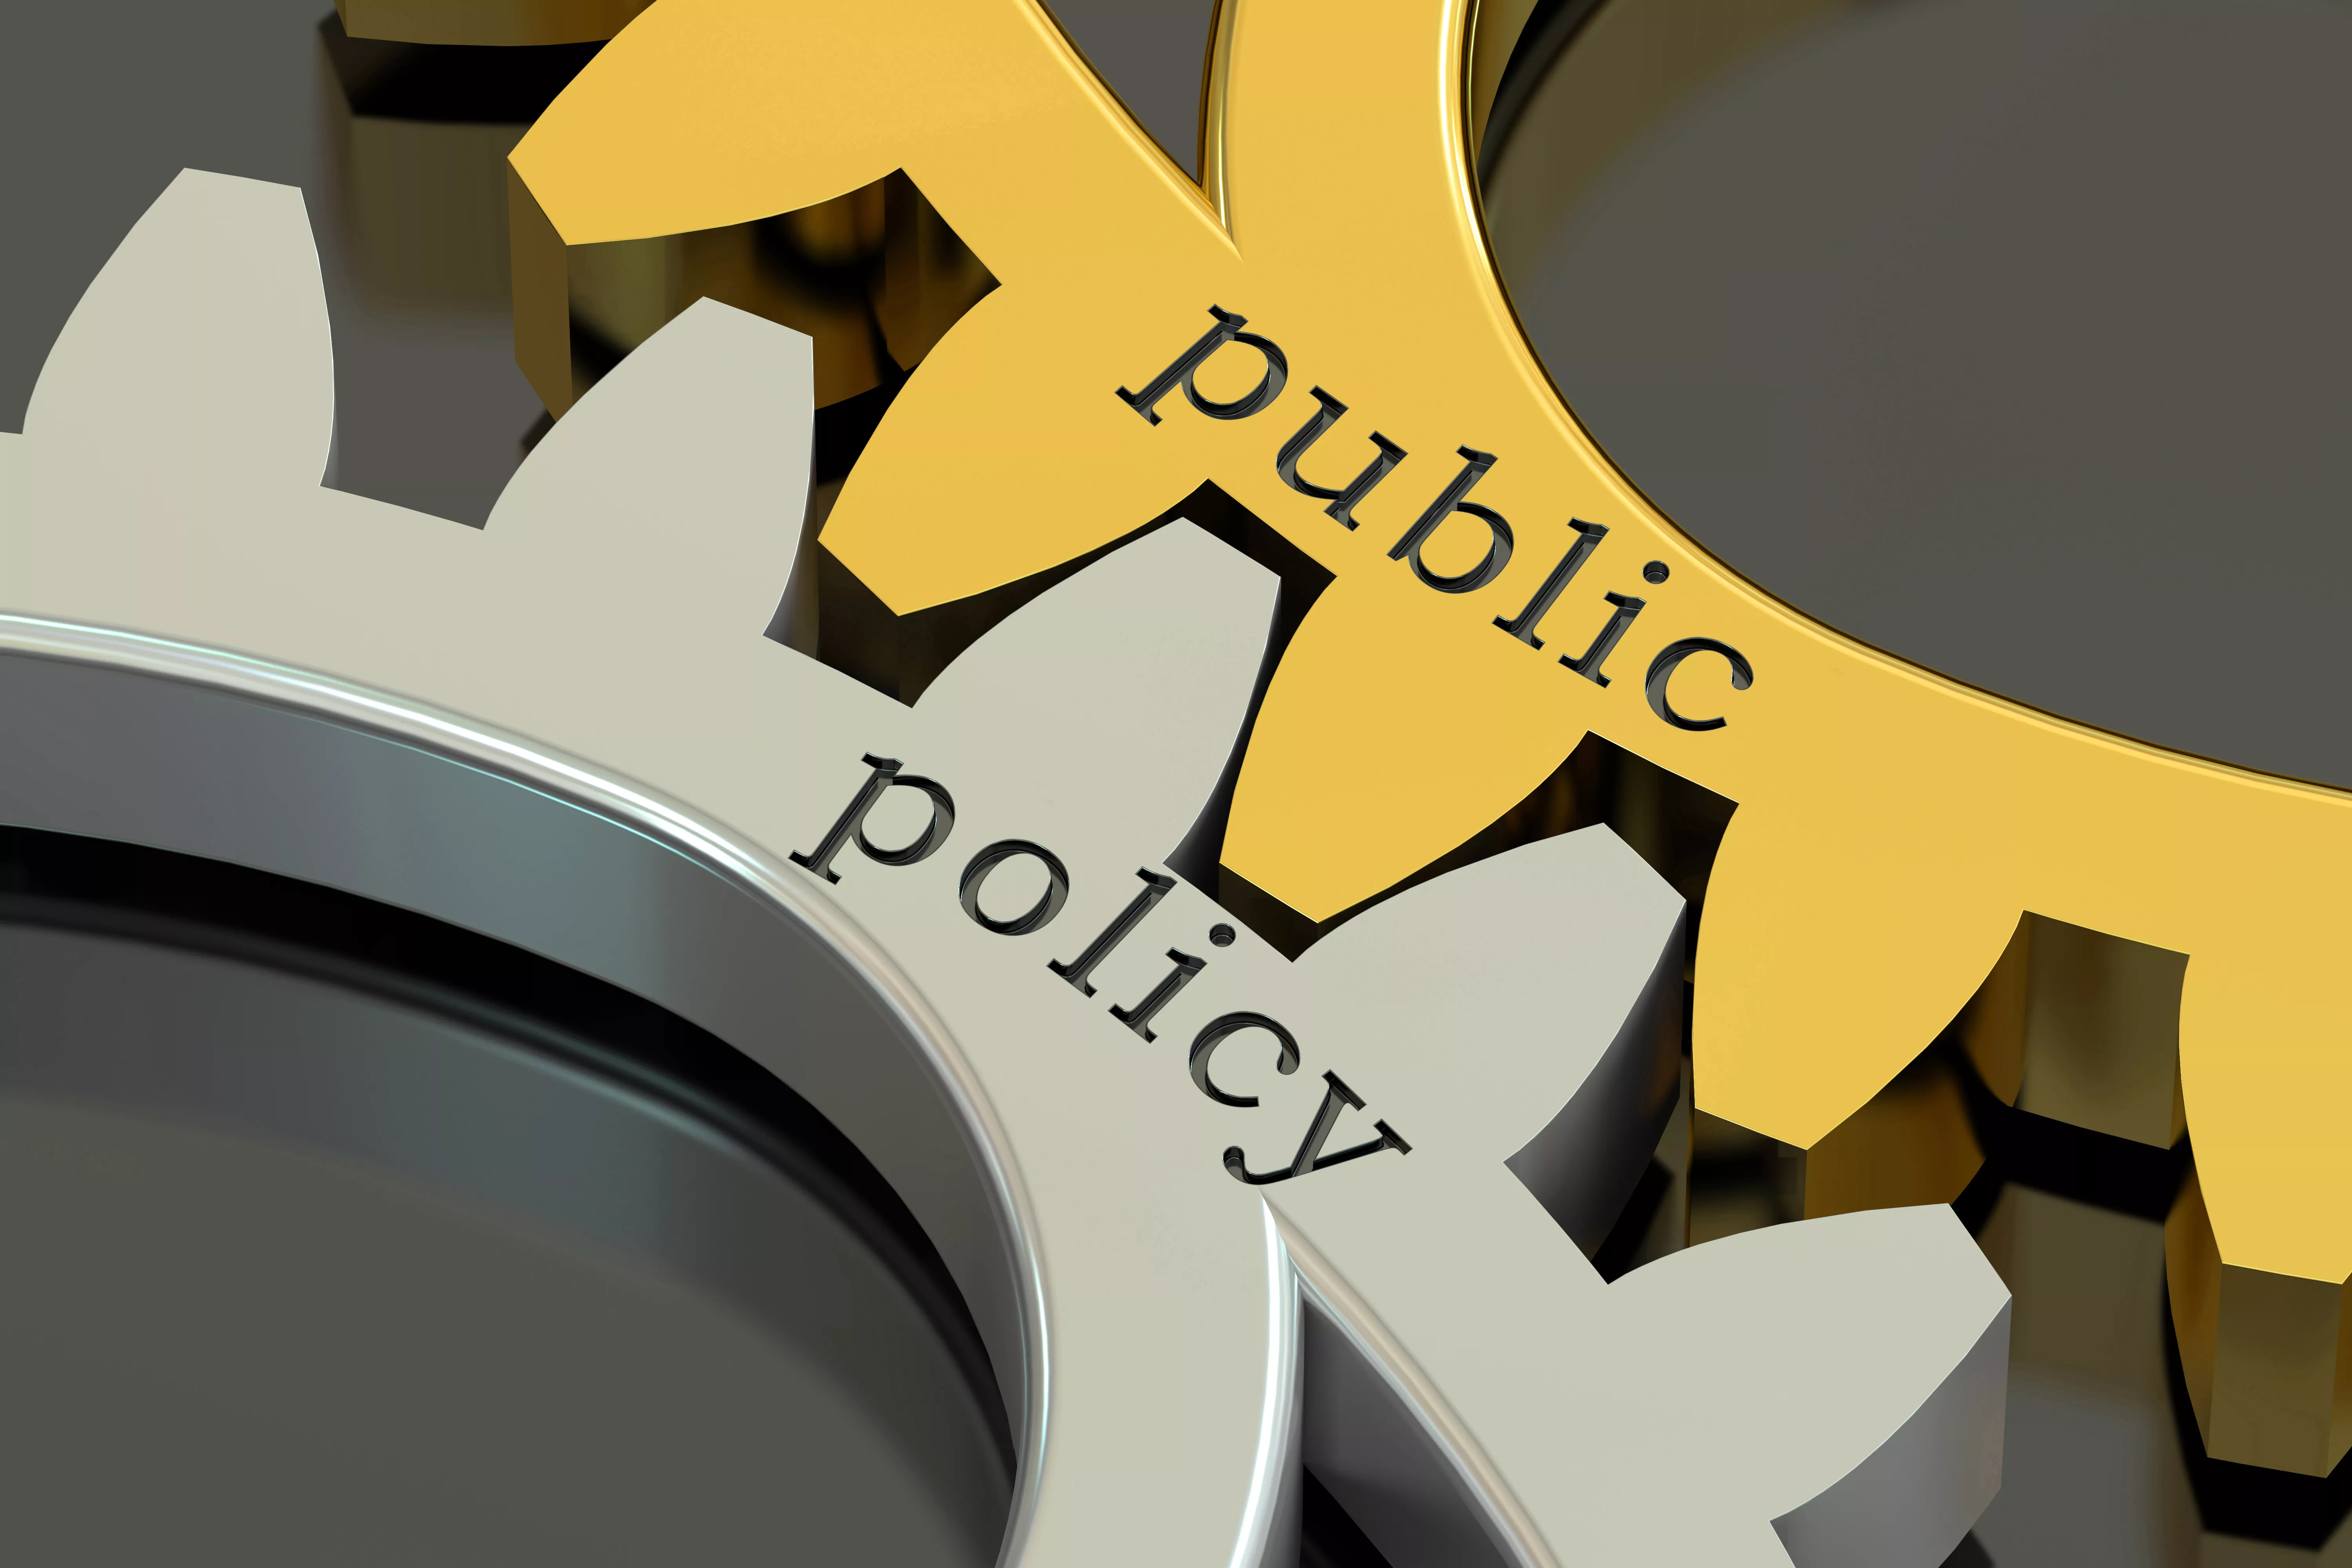 Advocacy public policy